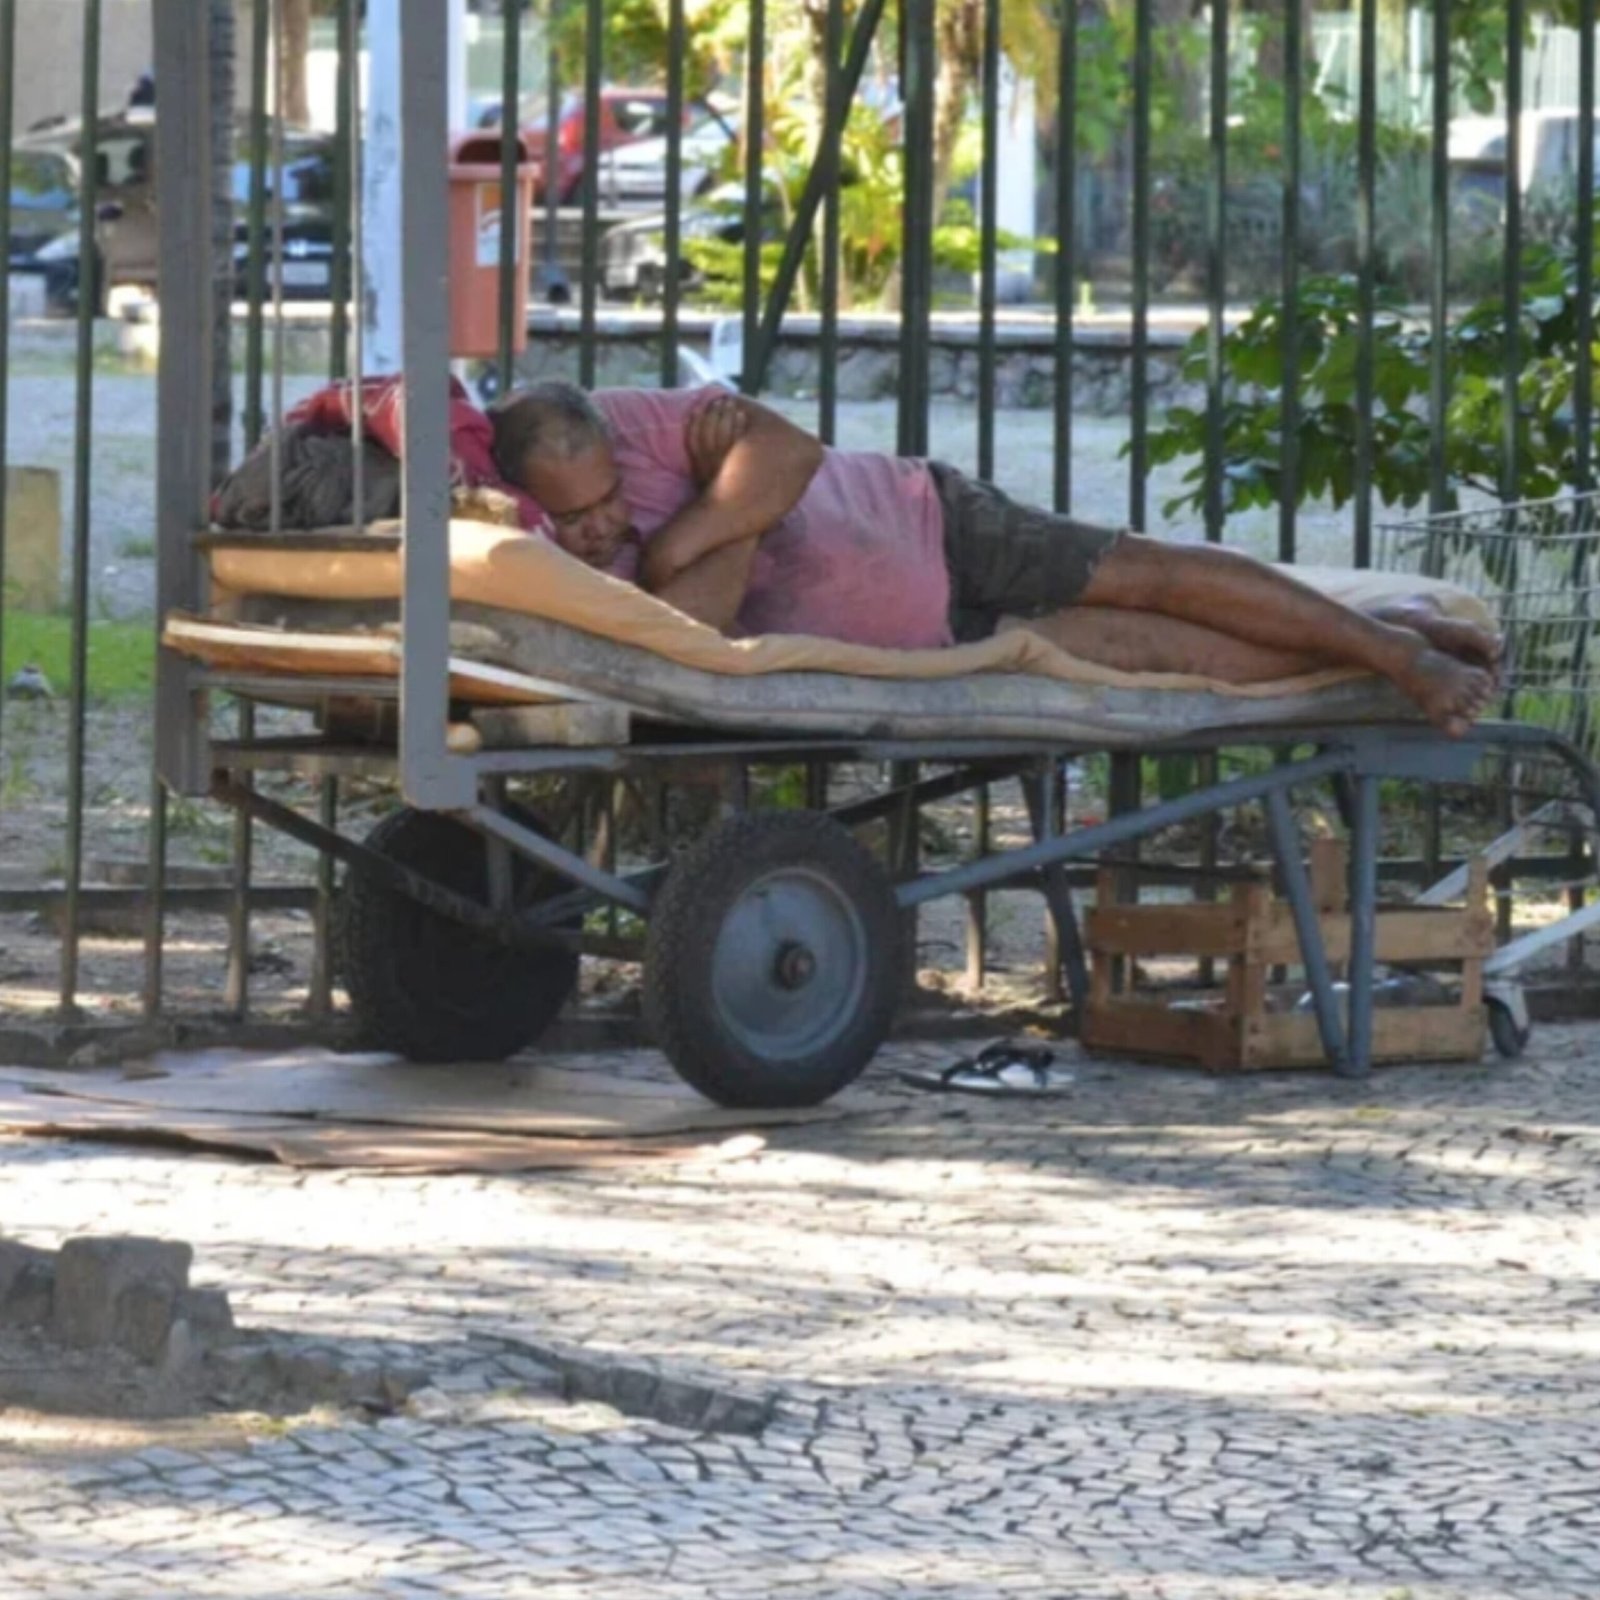 MP cobra Prefeitura de Niterói por medidas para moradores de rua